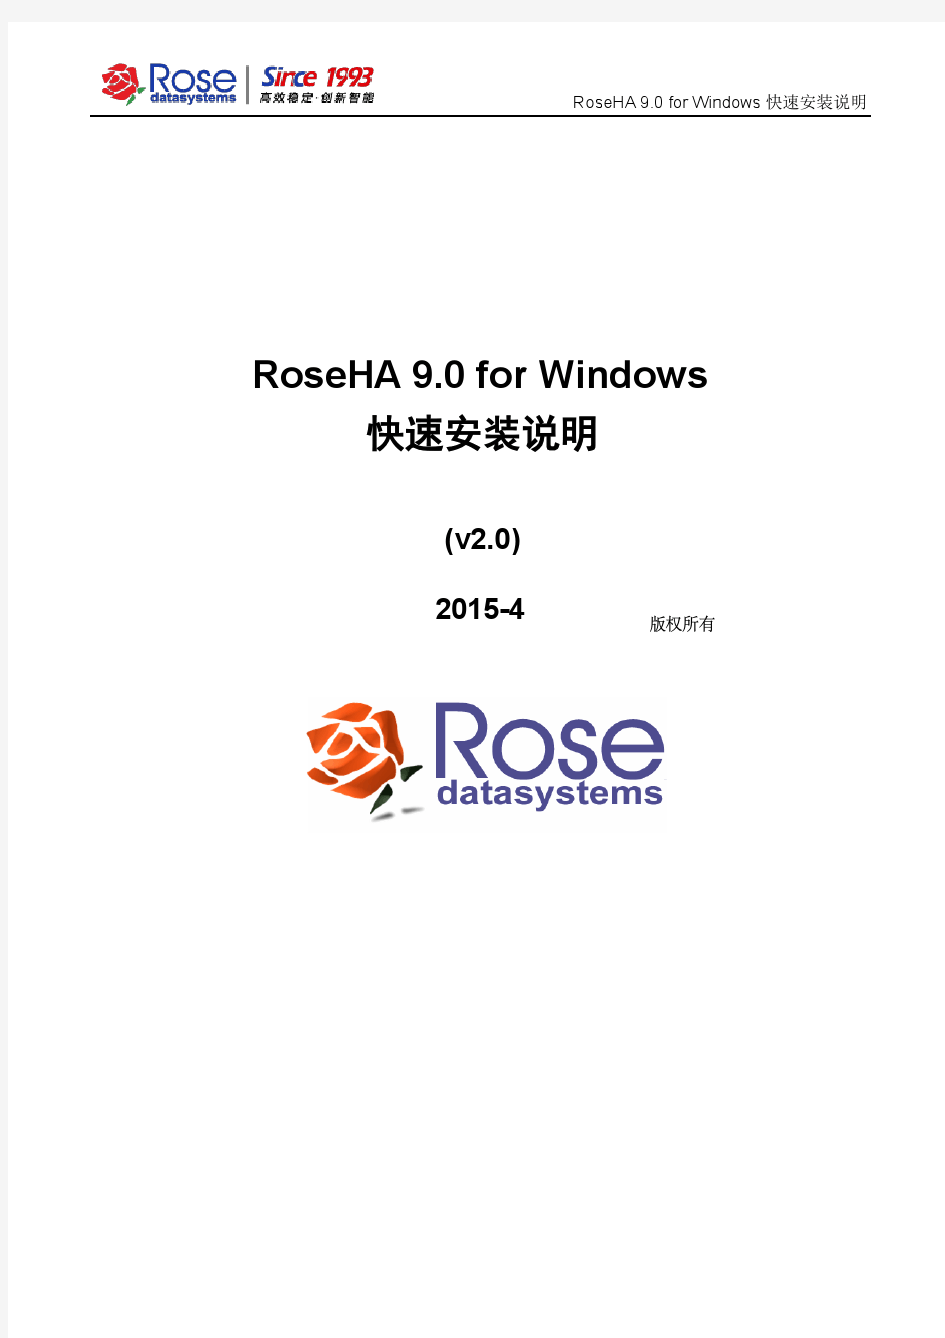 RoseHA 9.0 for Windows快速安装说明_v2.0-2015-04